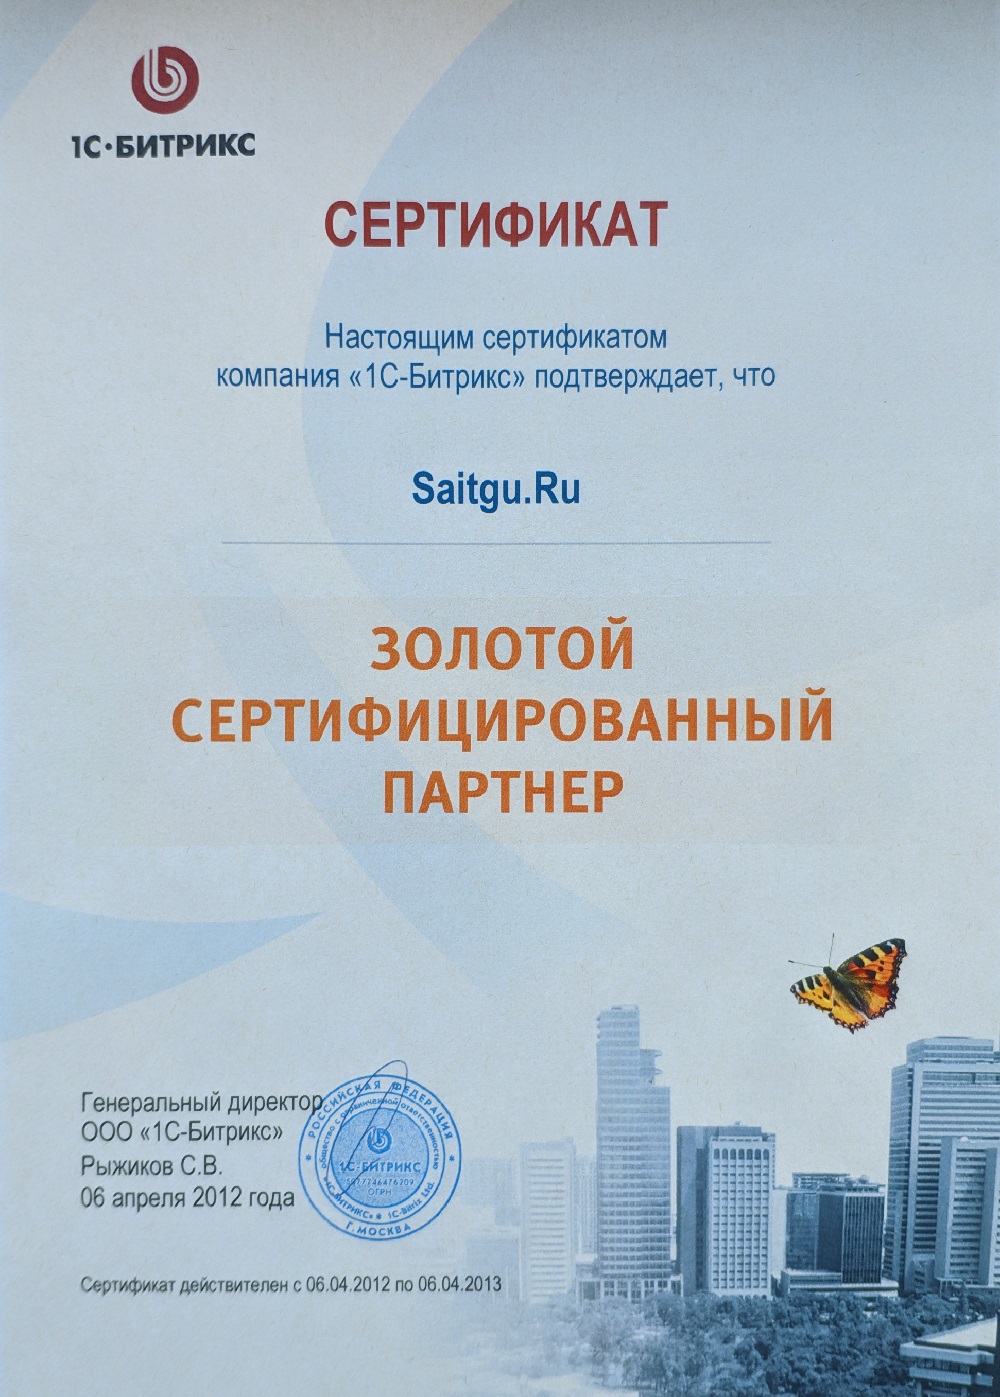 Сертификат от компании "1С-Битрикс"